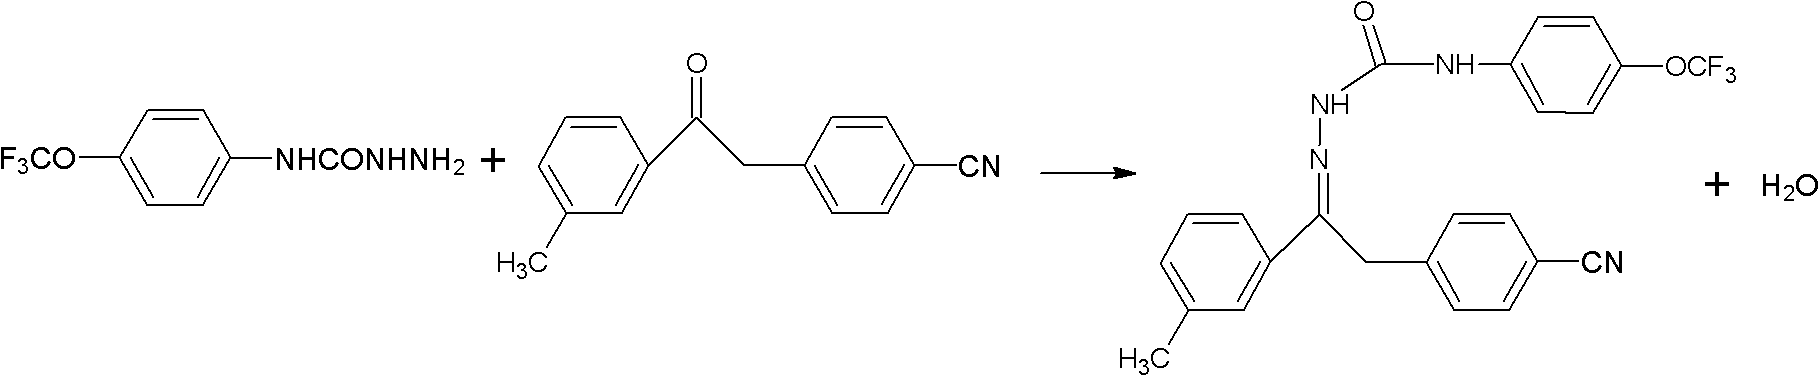 Method for synthesizing metaflumizone